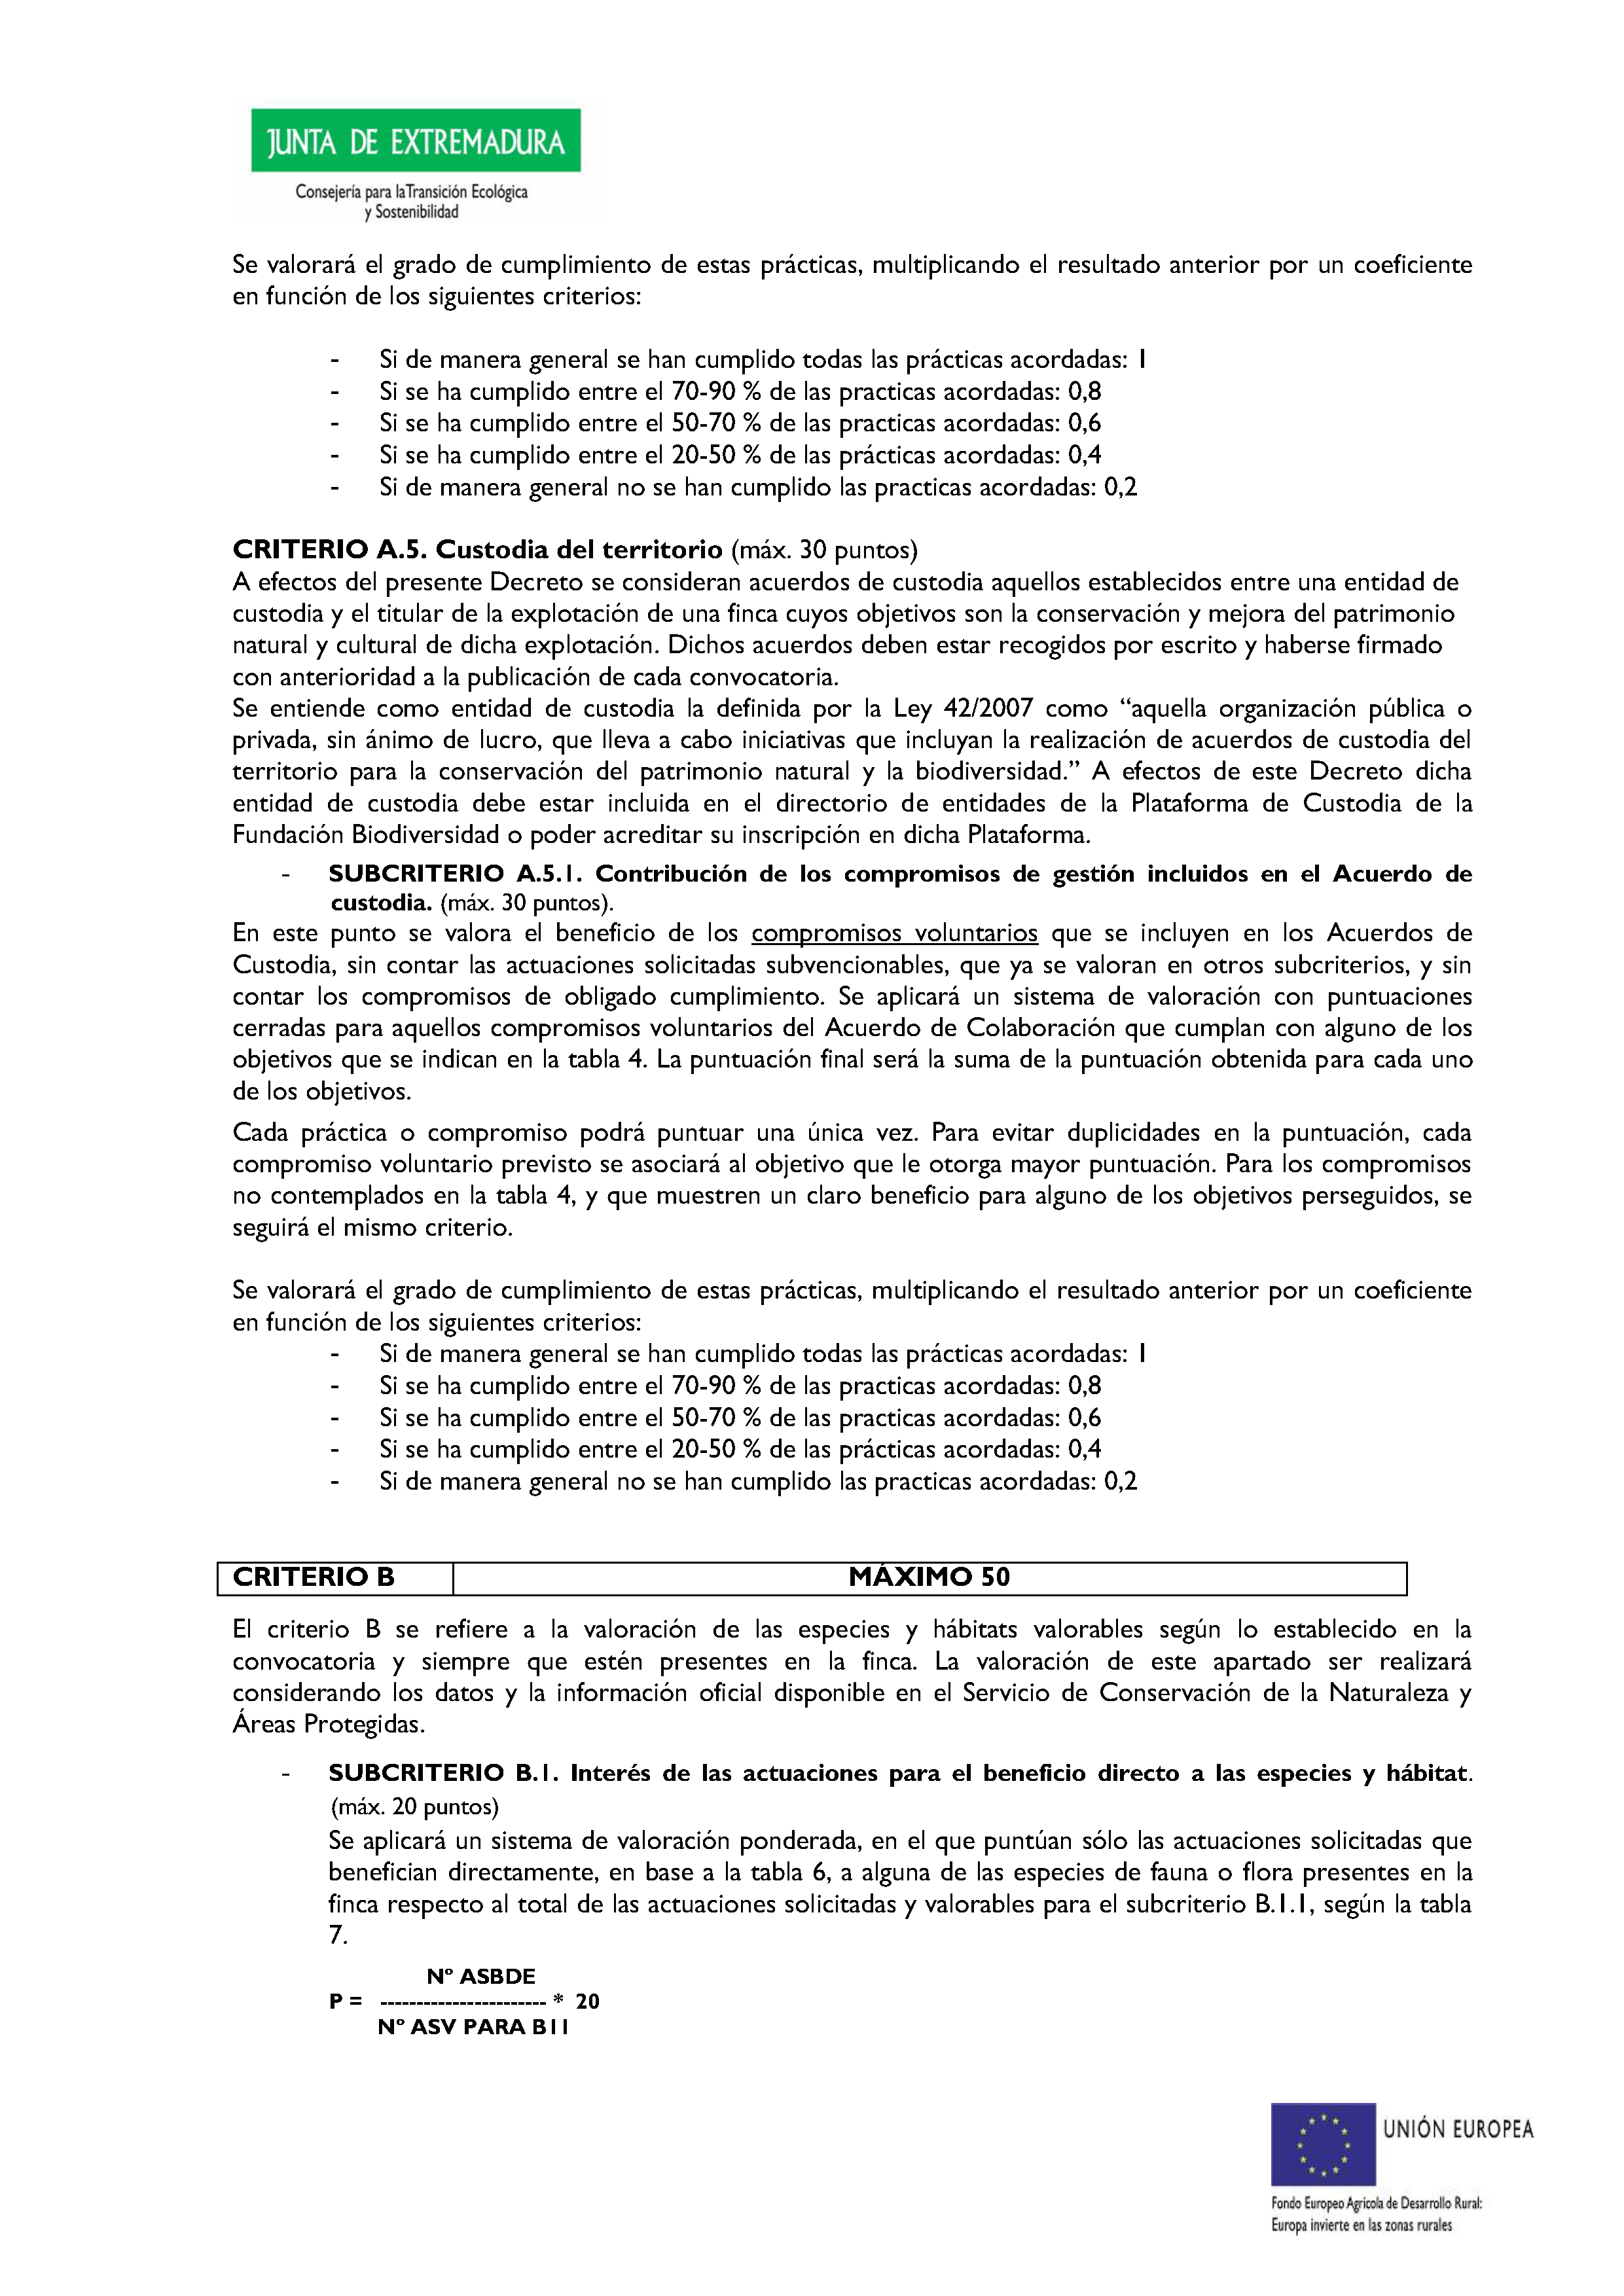 ANEXO VII CRITERIOS DE OTORGAMIENTO DE LA SUBVENCIÓN Pag 7